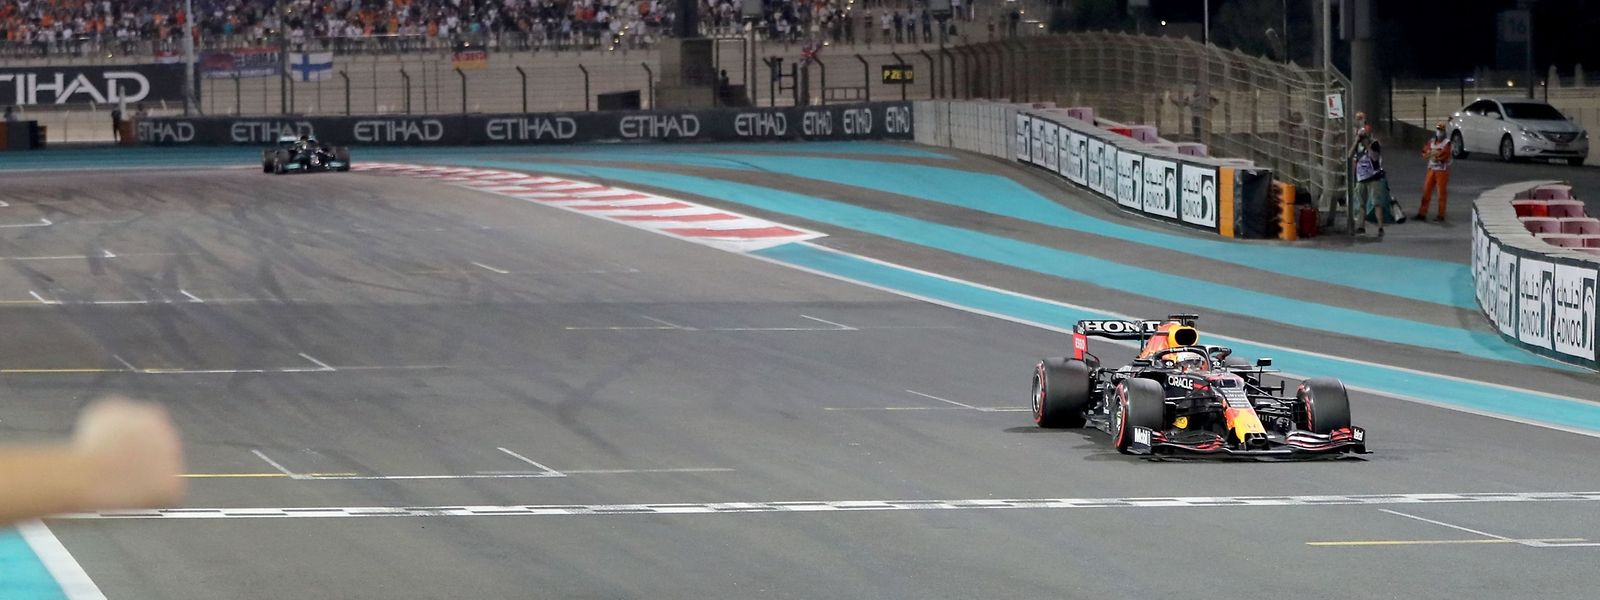 Max Verstappen zieht auf den letzten Metern an Lewis Hamilton vorbei und wird zum ersten Mal Formel-1-Weltmeister.